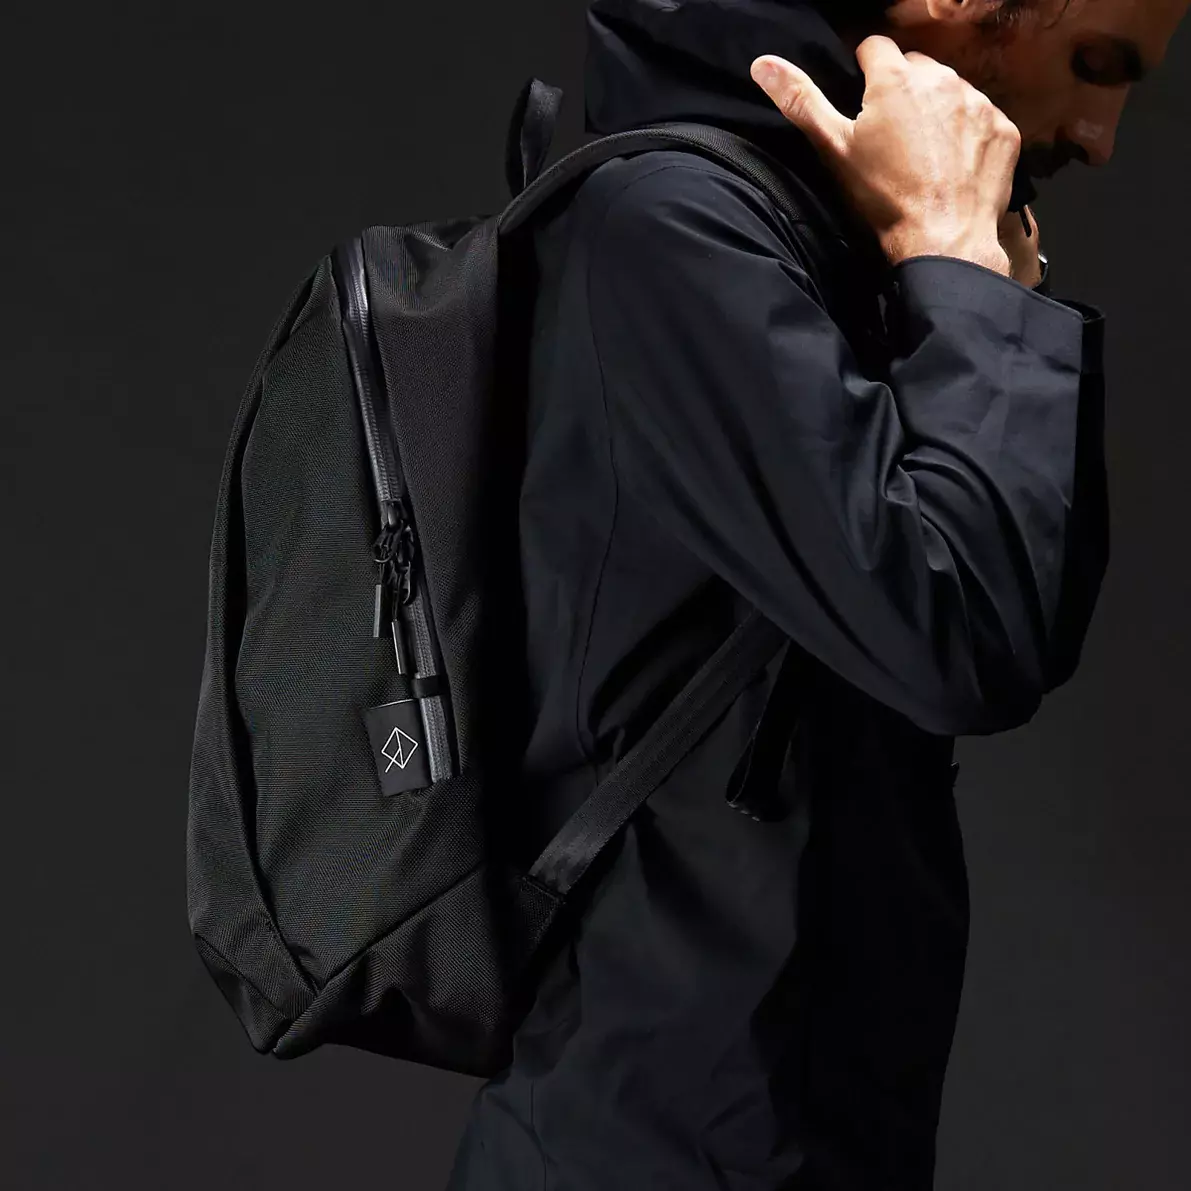 Купить рюкзак Wexley Stem Daypack онлайн с бесплатной доставкой